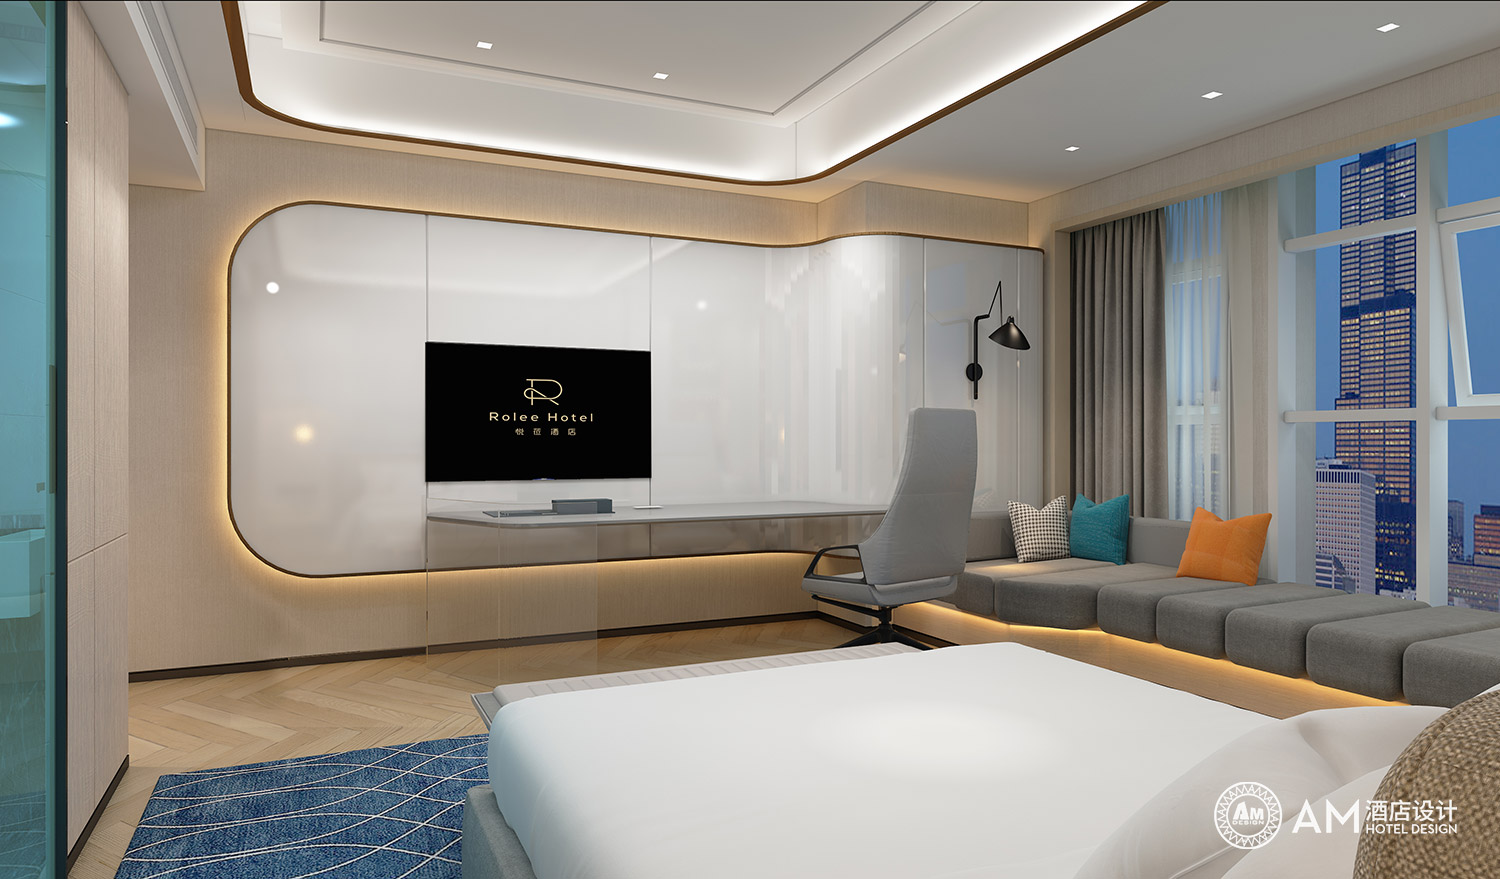 AM DESIGN | Room design of Yuelai Boutique Hotel